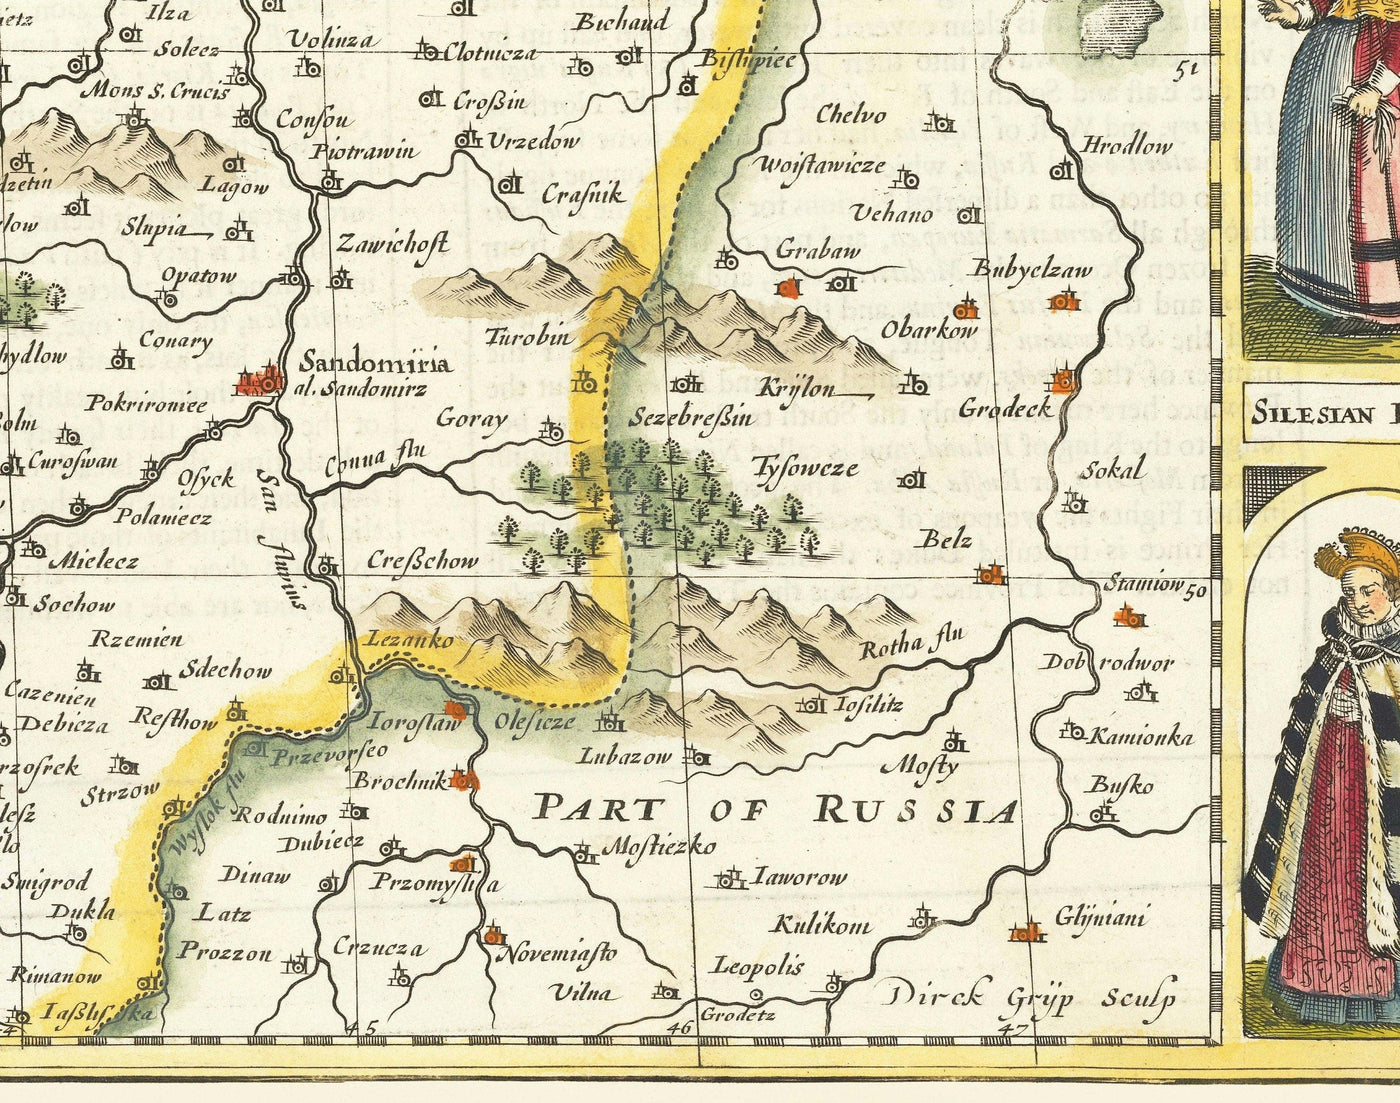 Raro viejo mapa de Polonia por John Speed, 1626-Alemania, Prusia, Lituania, Bohemia, Varsovia